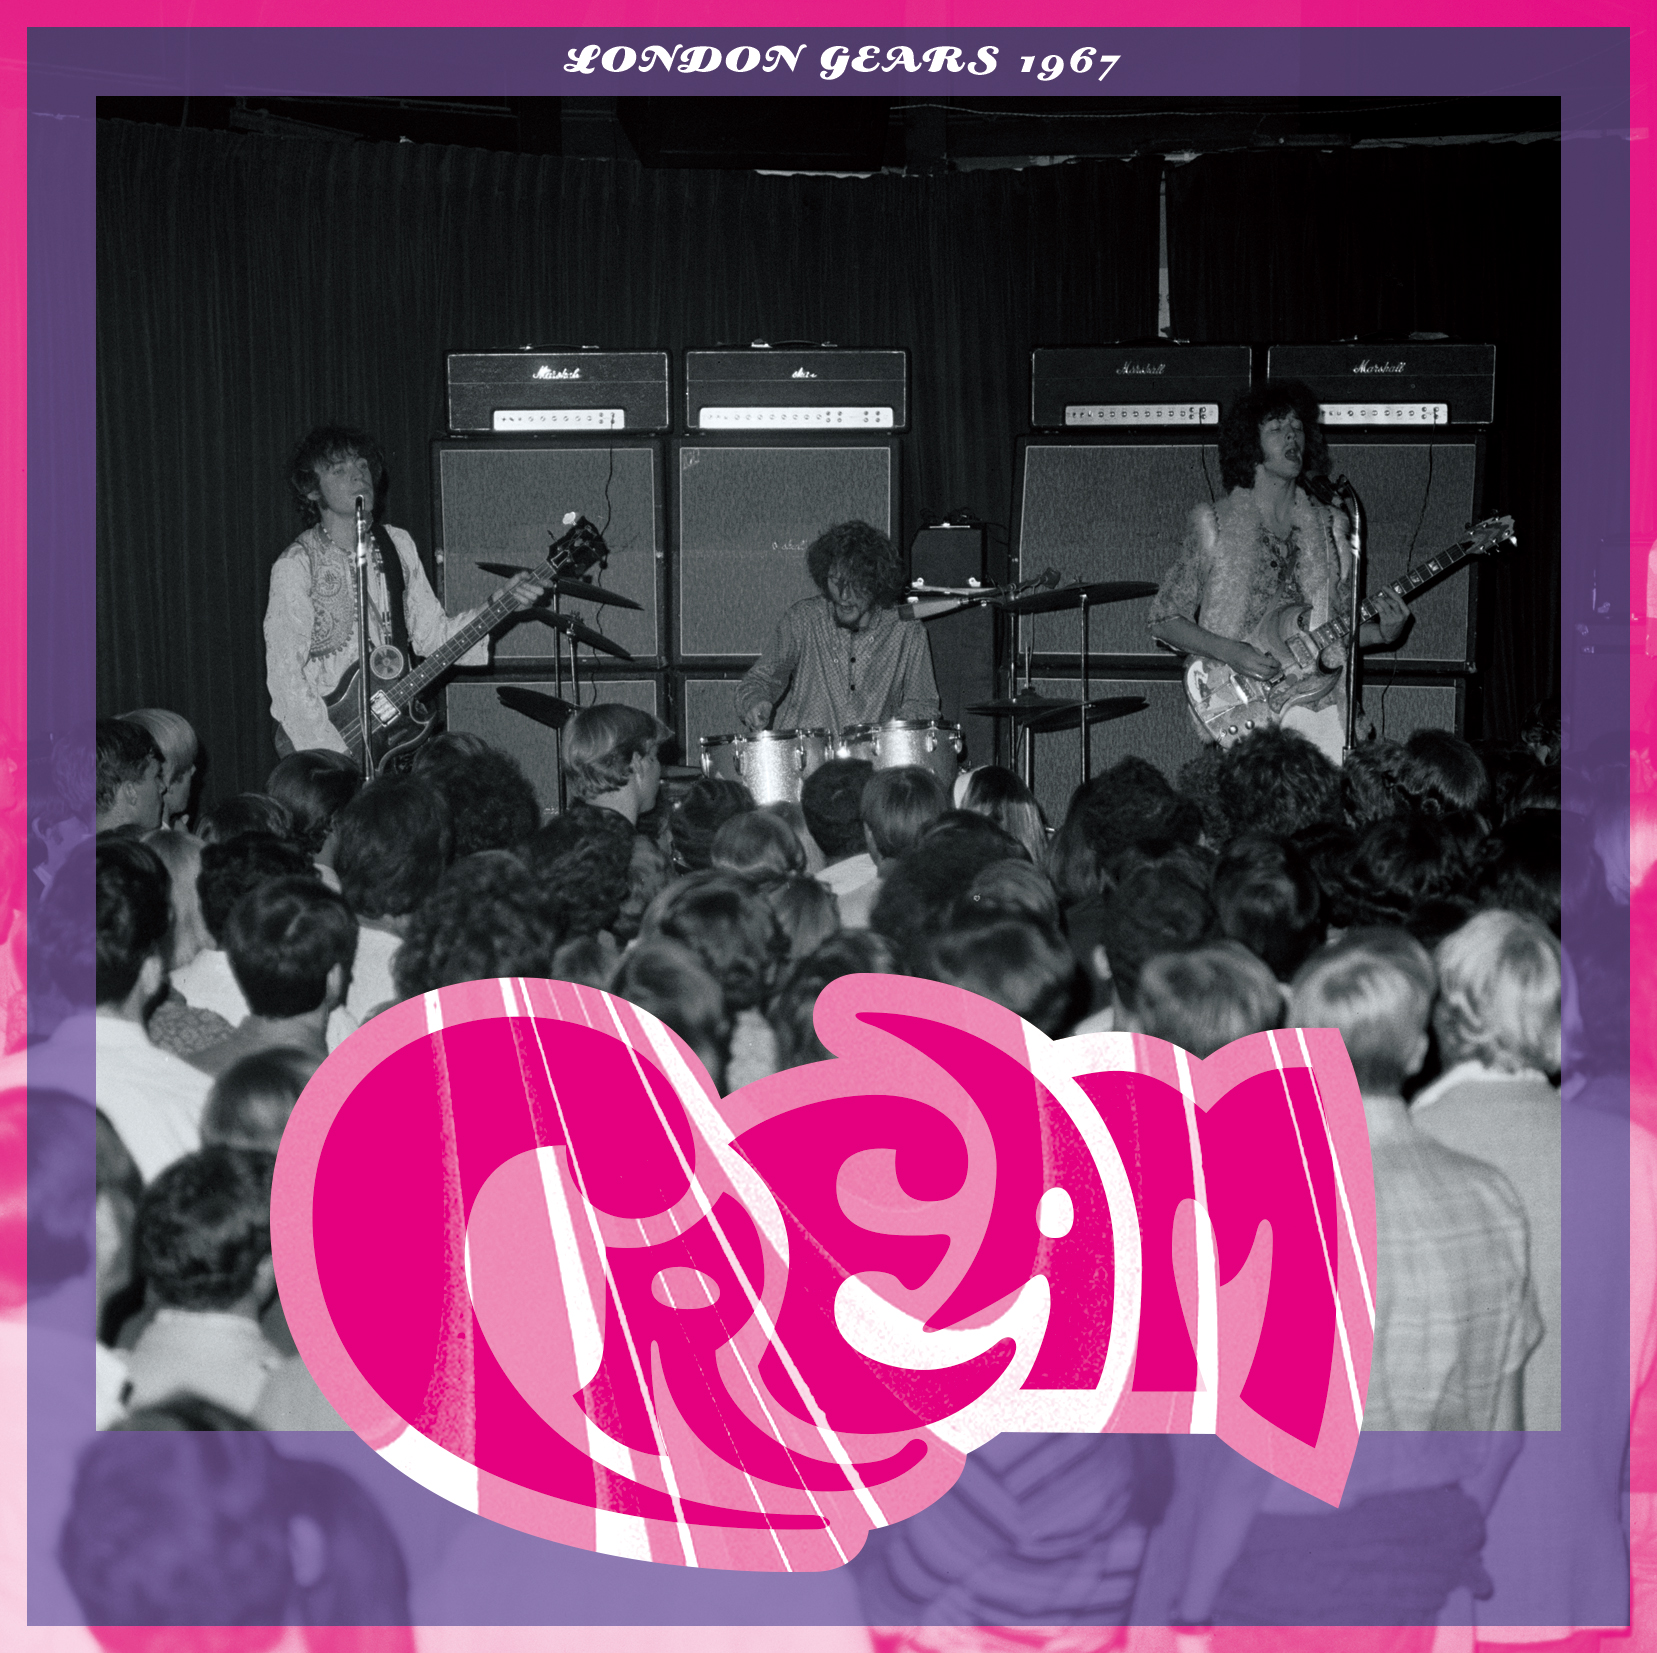 CREAM / LONDIN GEARS 1967